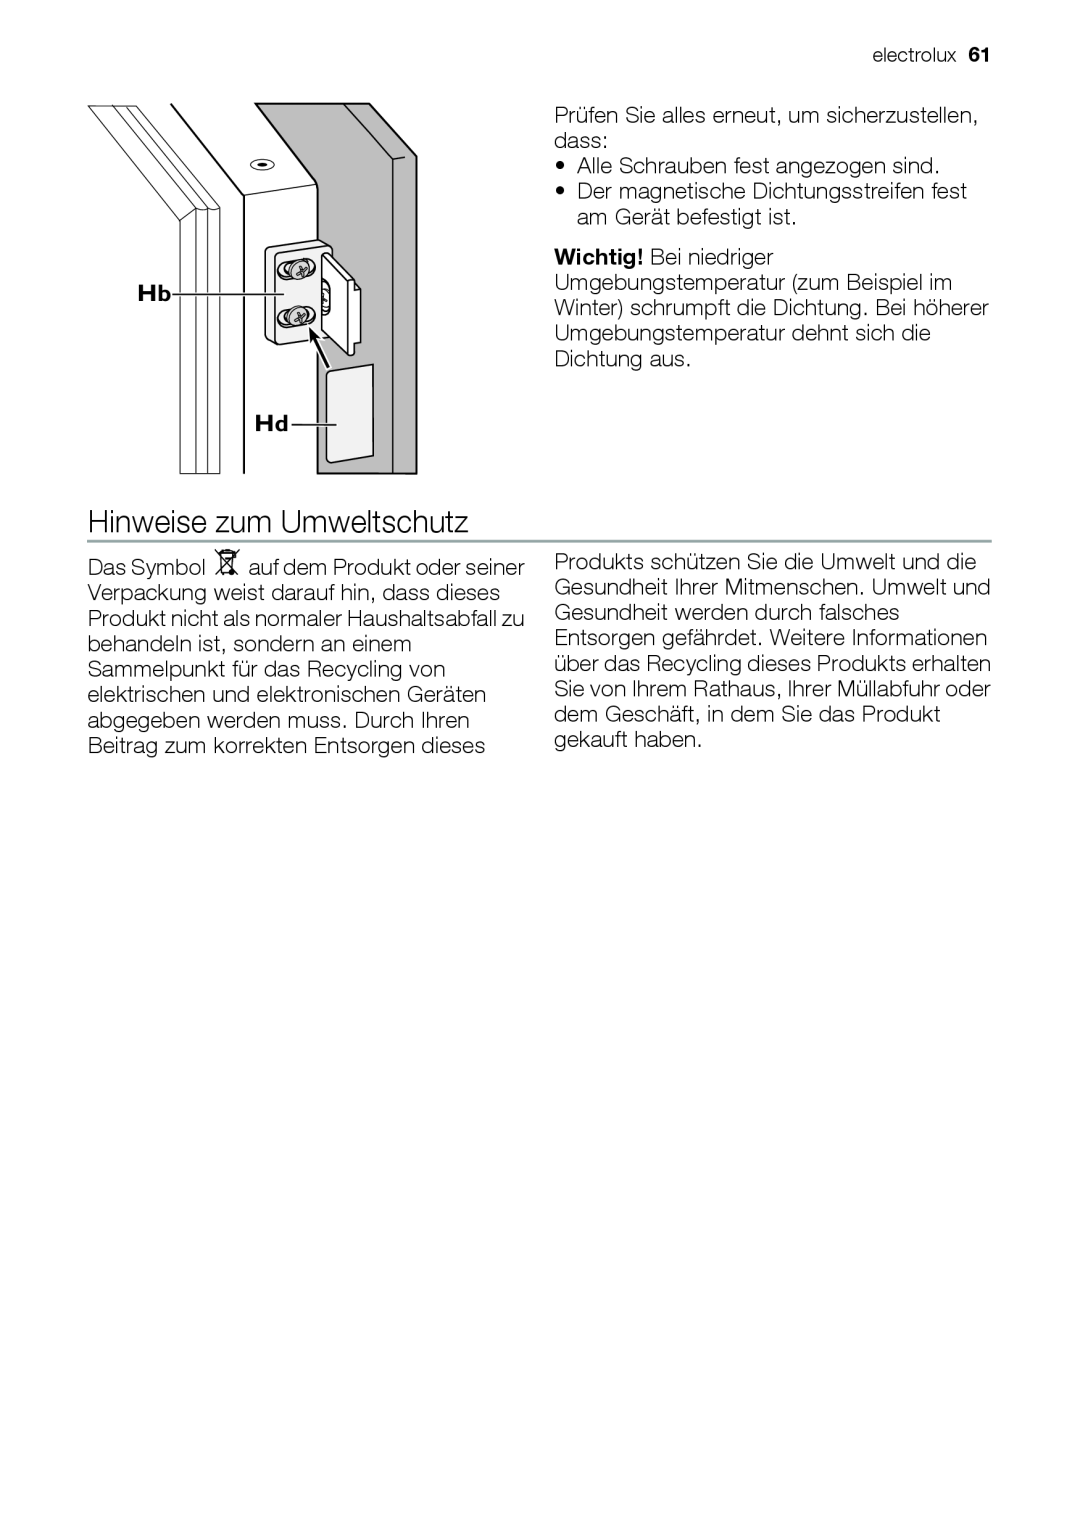 Electrolux EUN12510 user manual Hinweise zum Umweltschutz, Hb Hd 